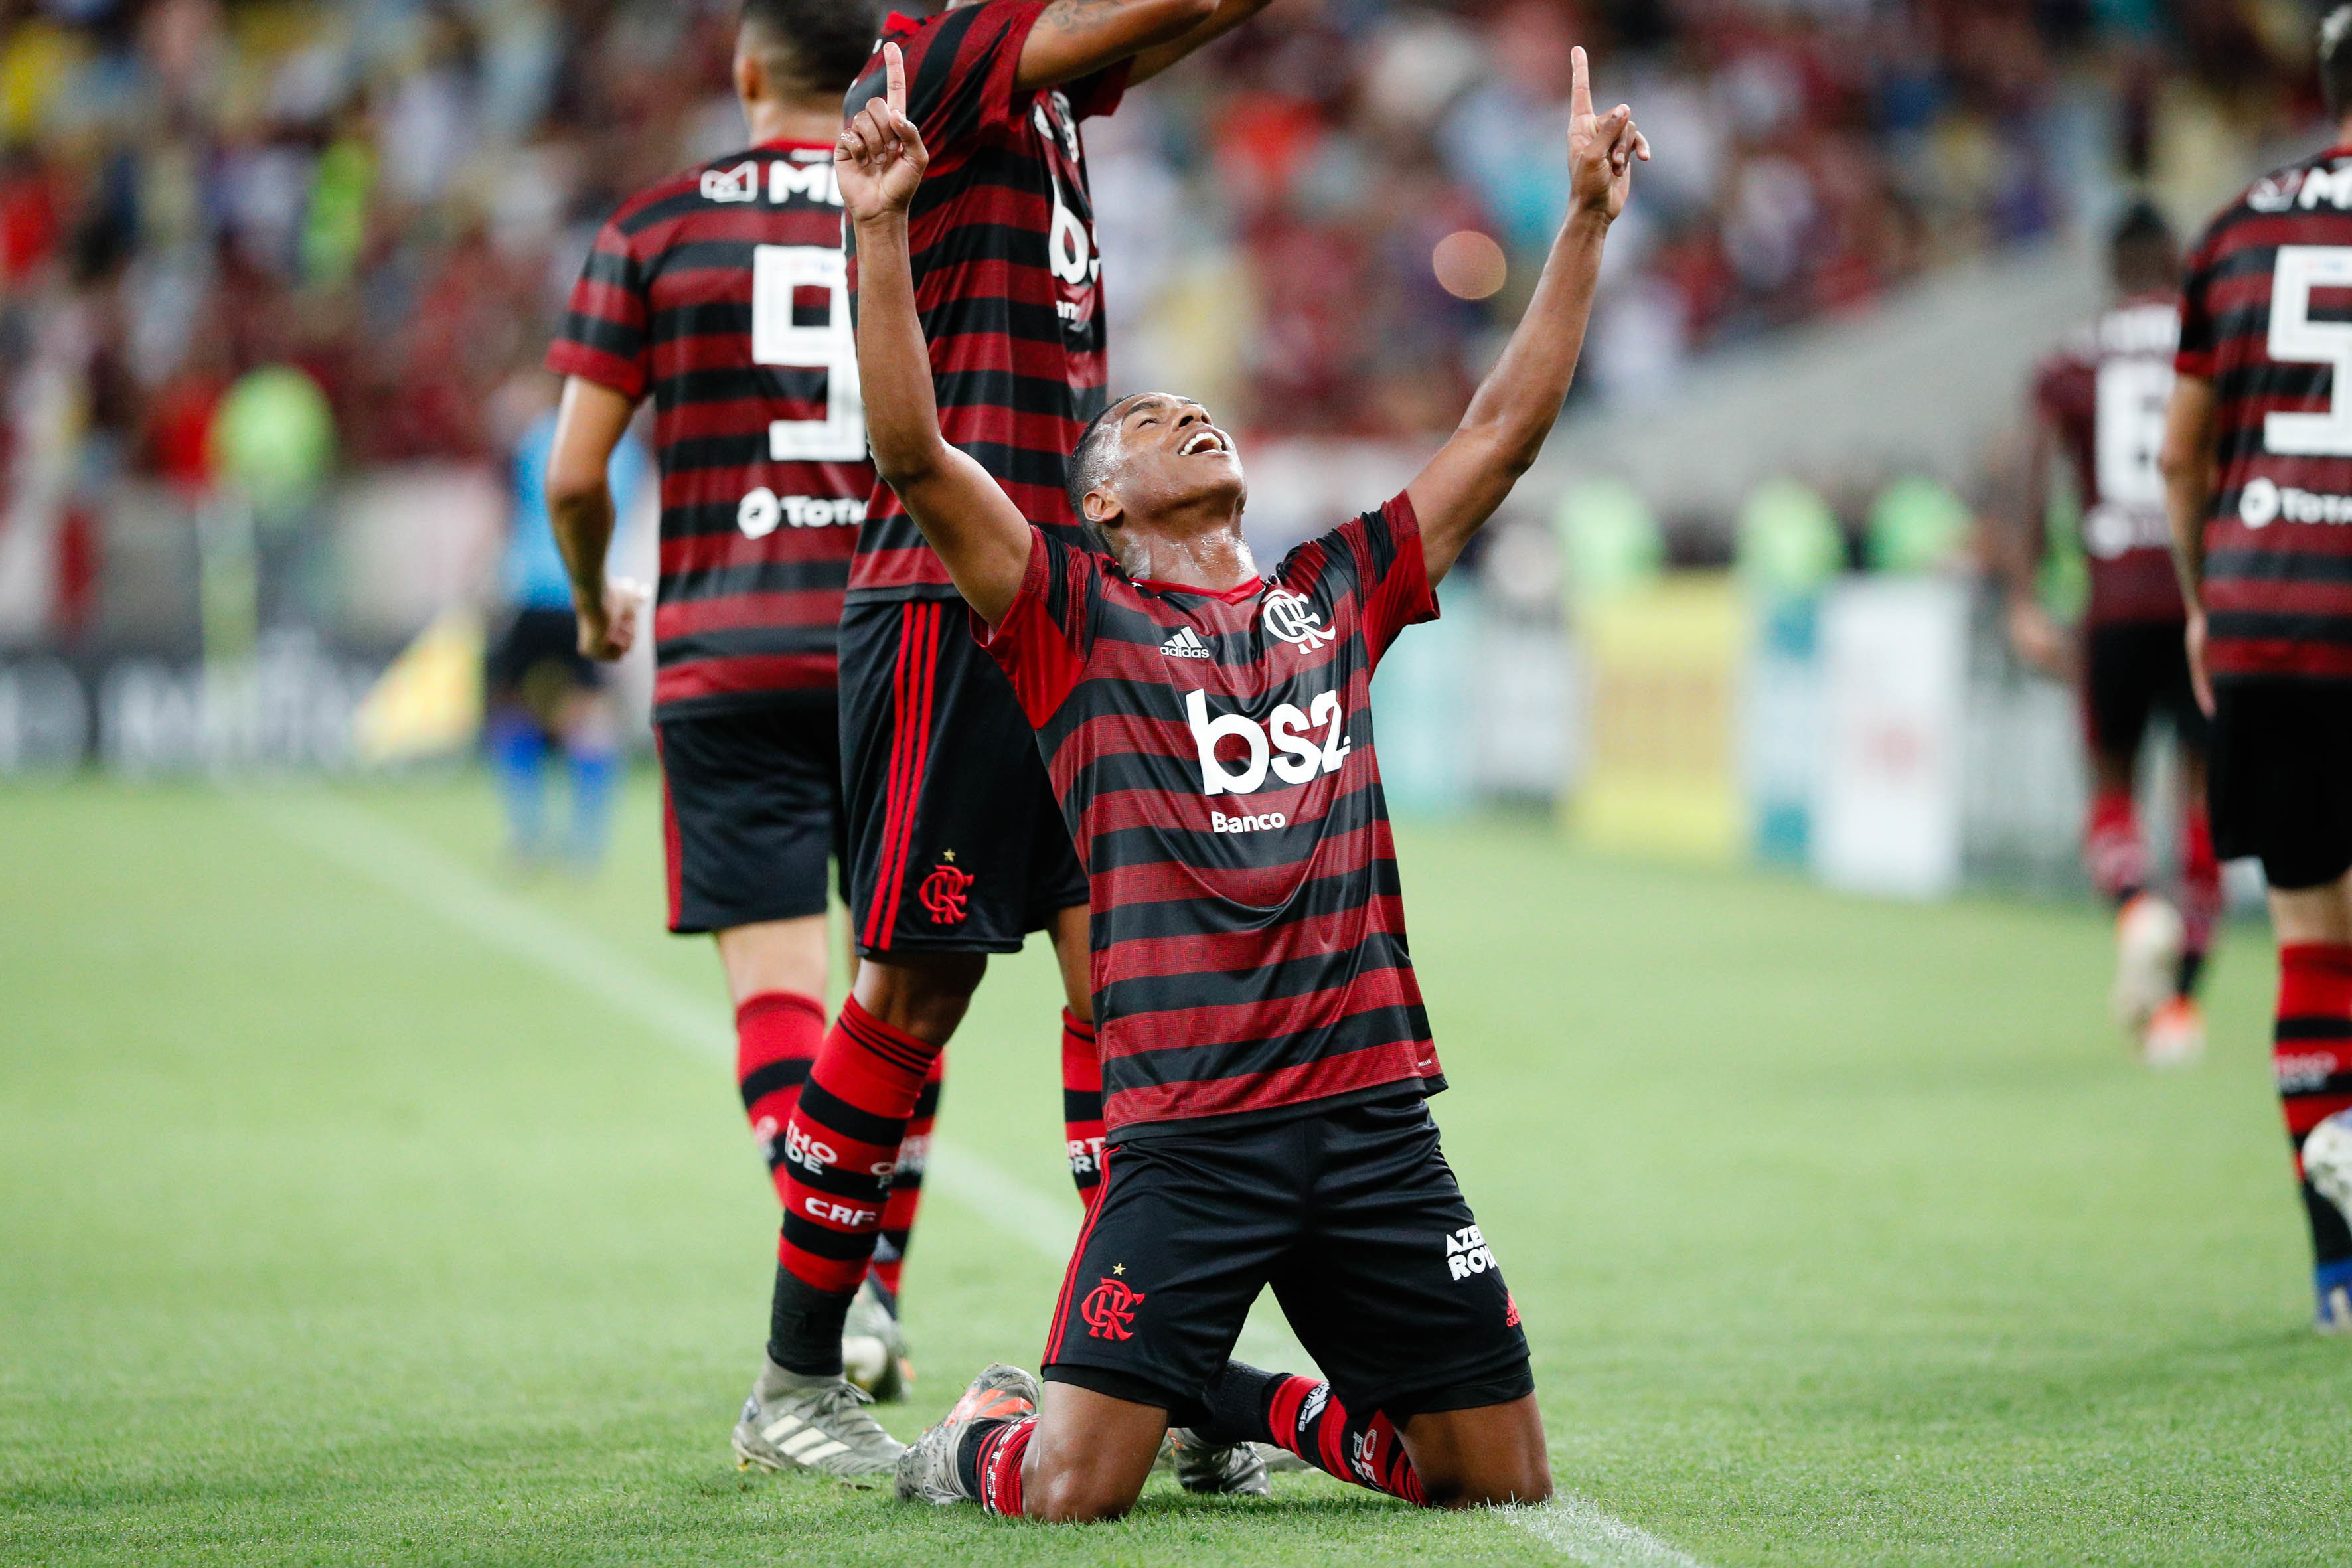 Assistir Flamengo X Volta Redonda : Flamengo X Volta Redonda Pelo Carioca Onde Assistir A Transmissao Ao Vivo E Que Horas E O Jogo Futebol Esportes O Povo